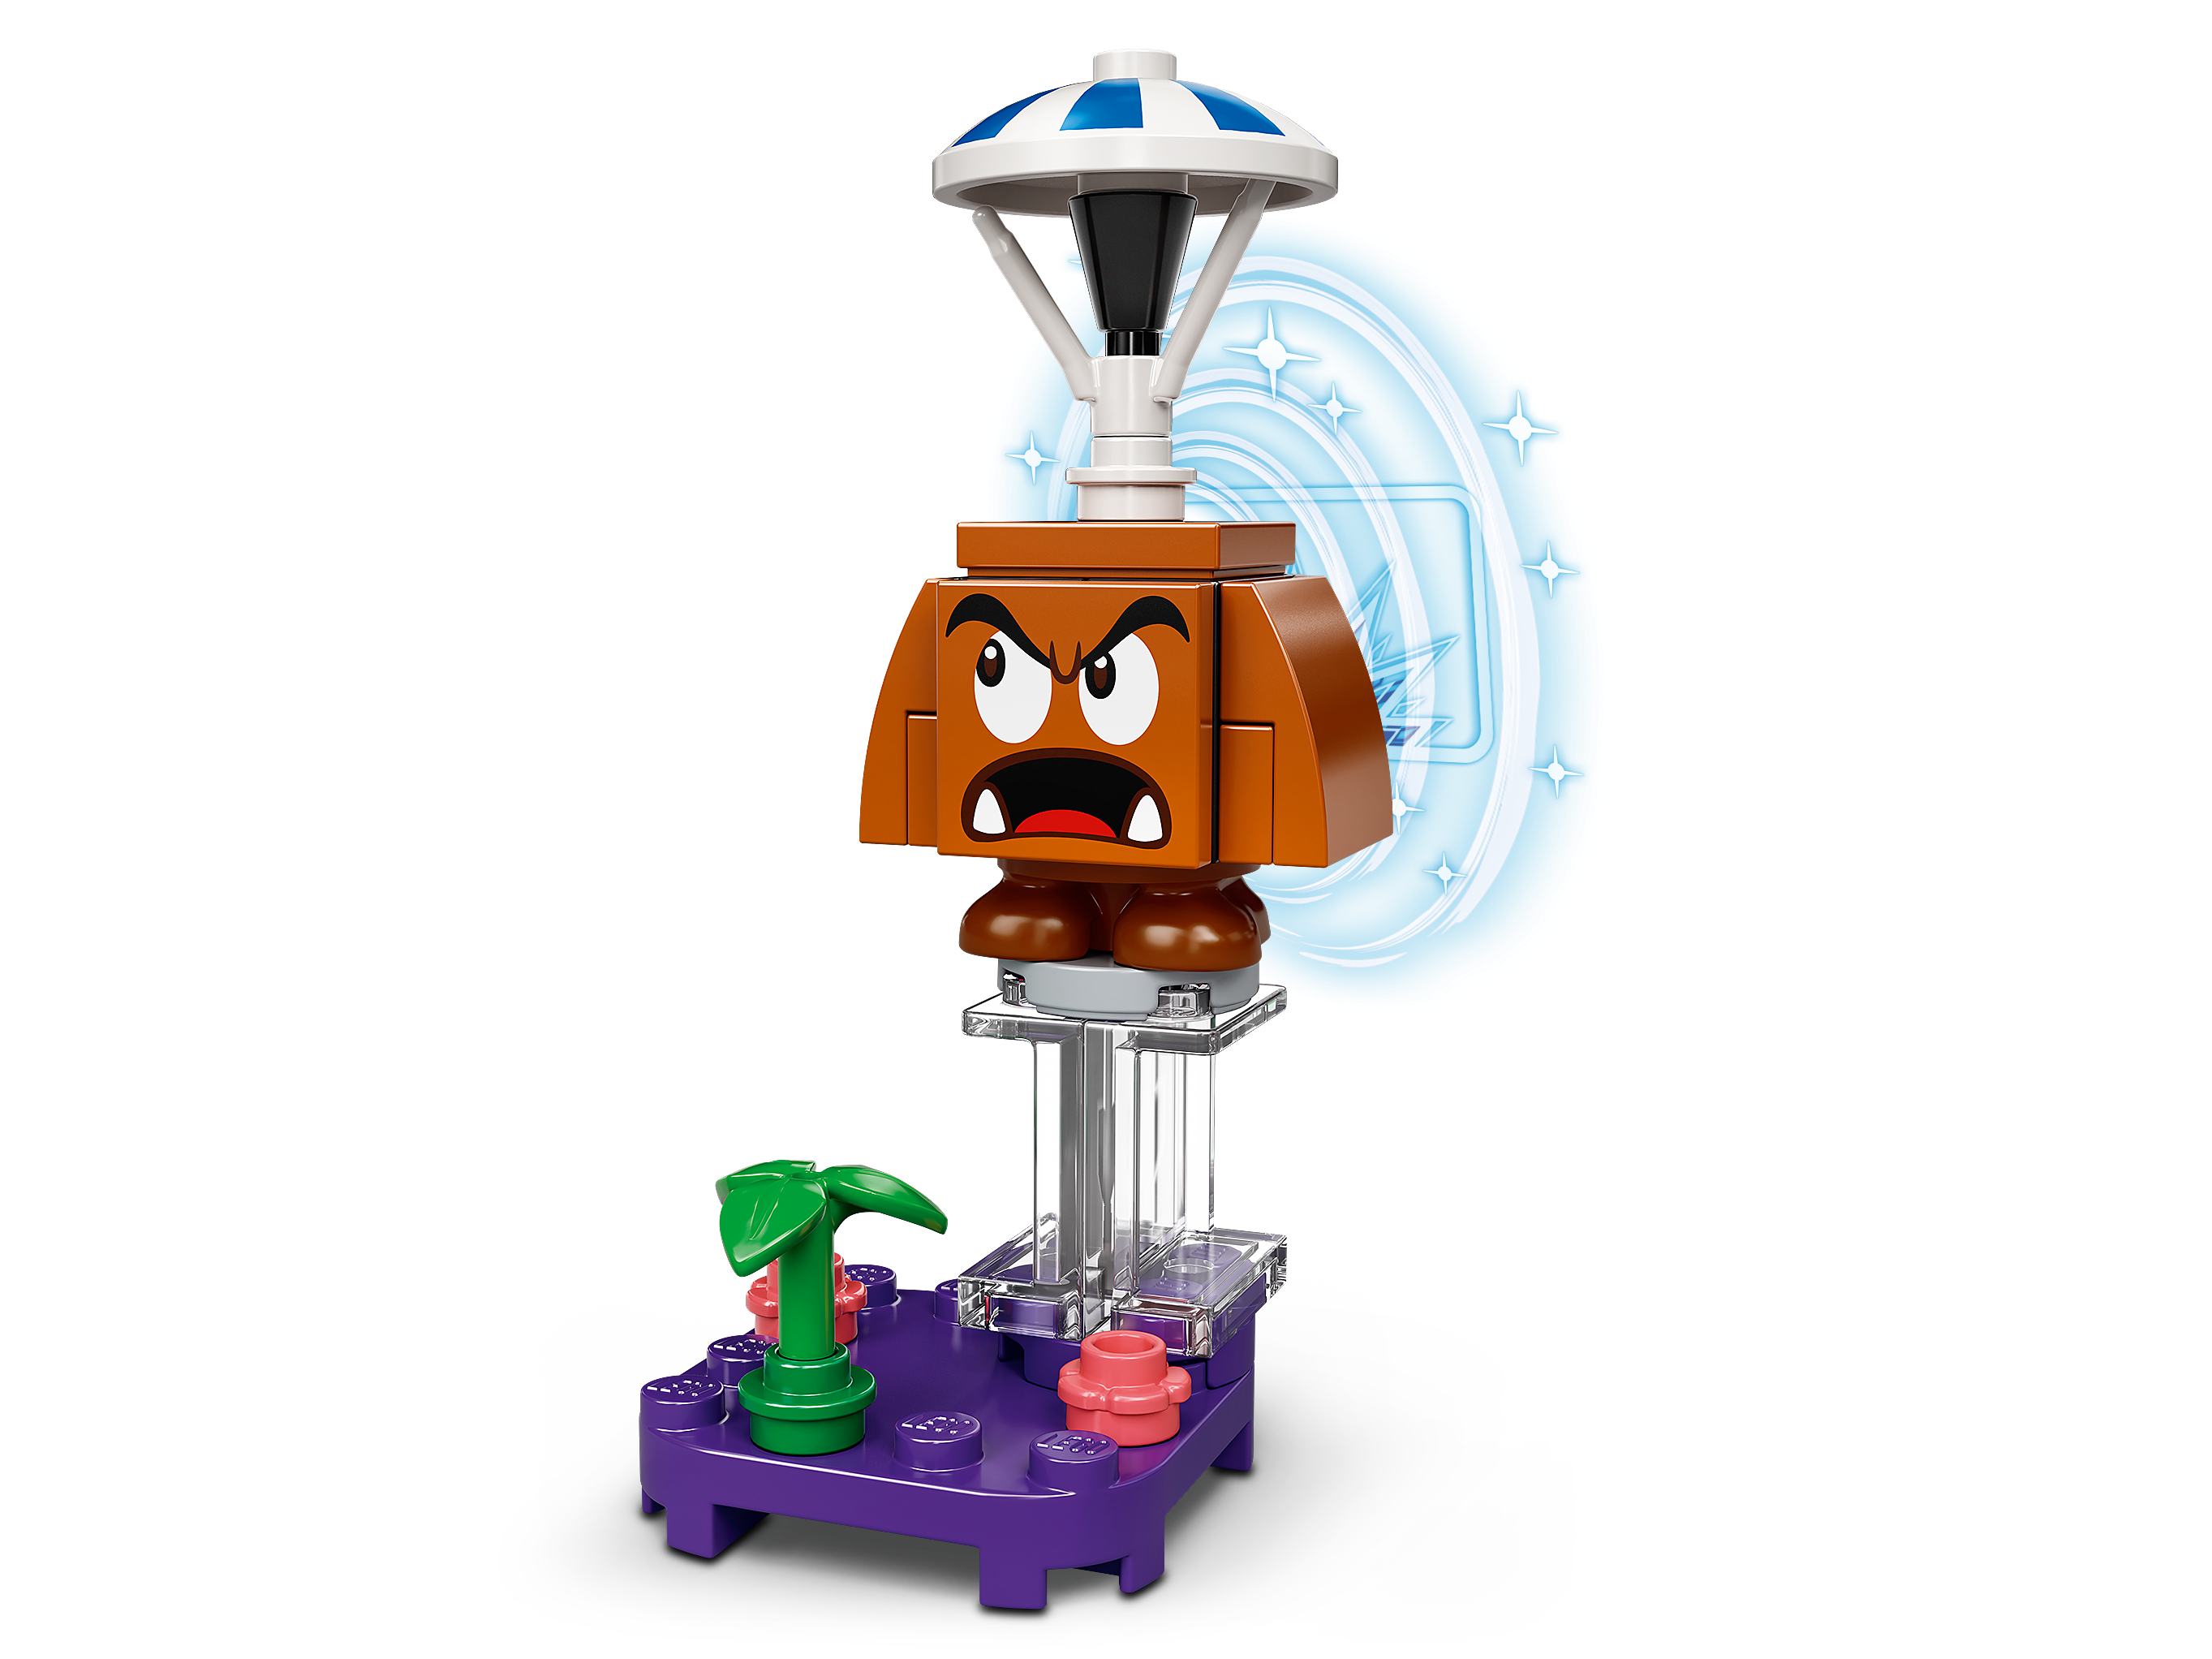 Lego Super Mario - 23 Peças - Personagens - 71361 - Lego - Real Brinquedos